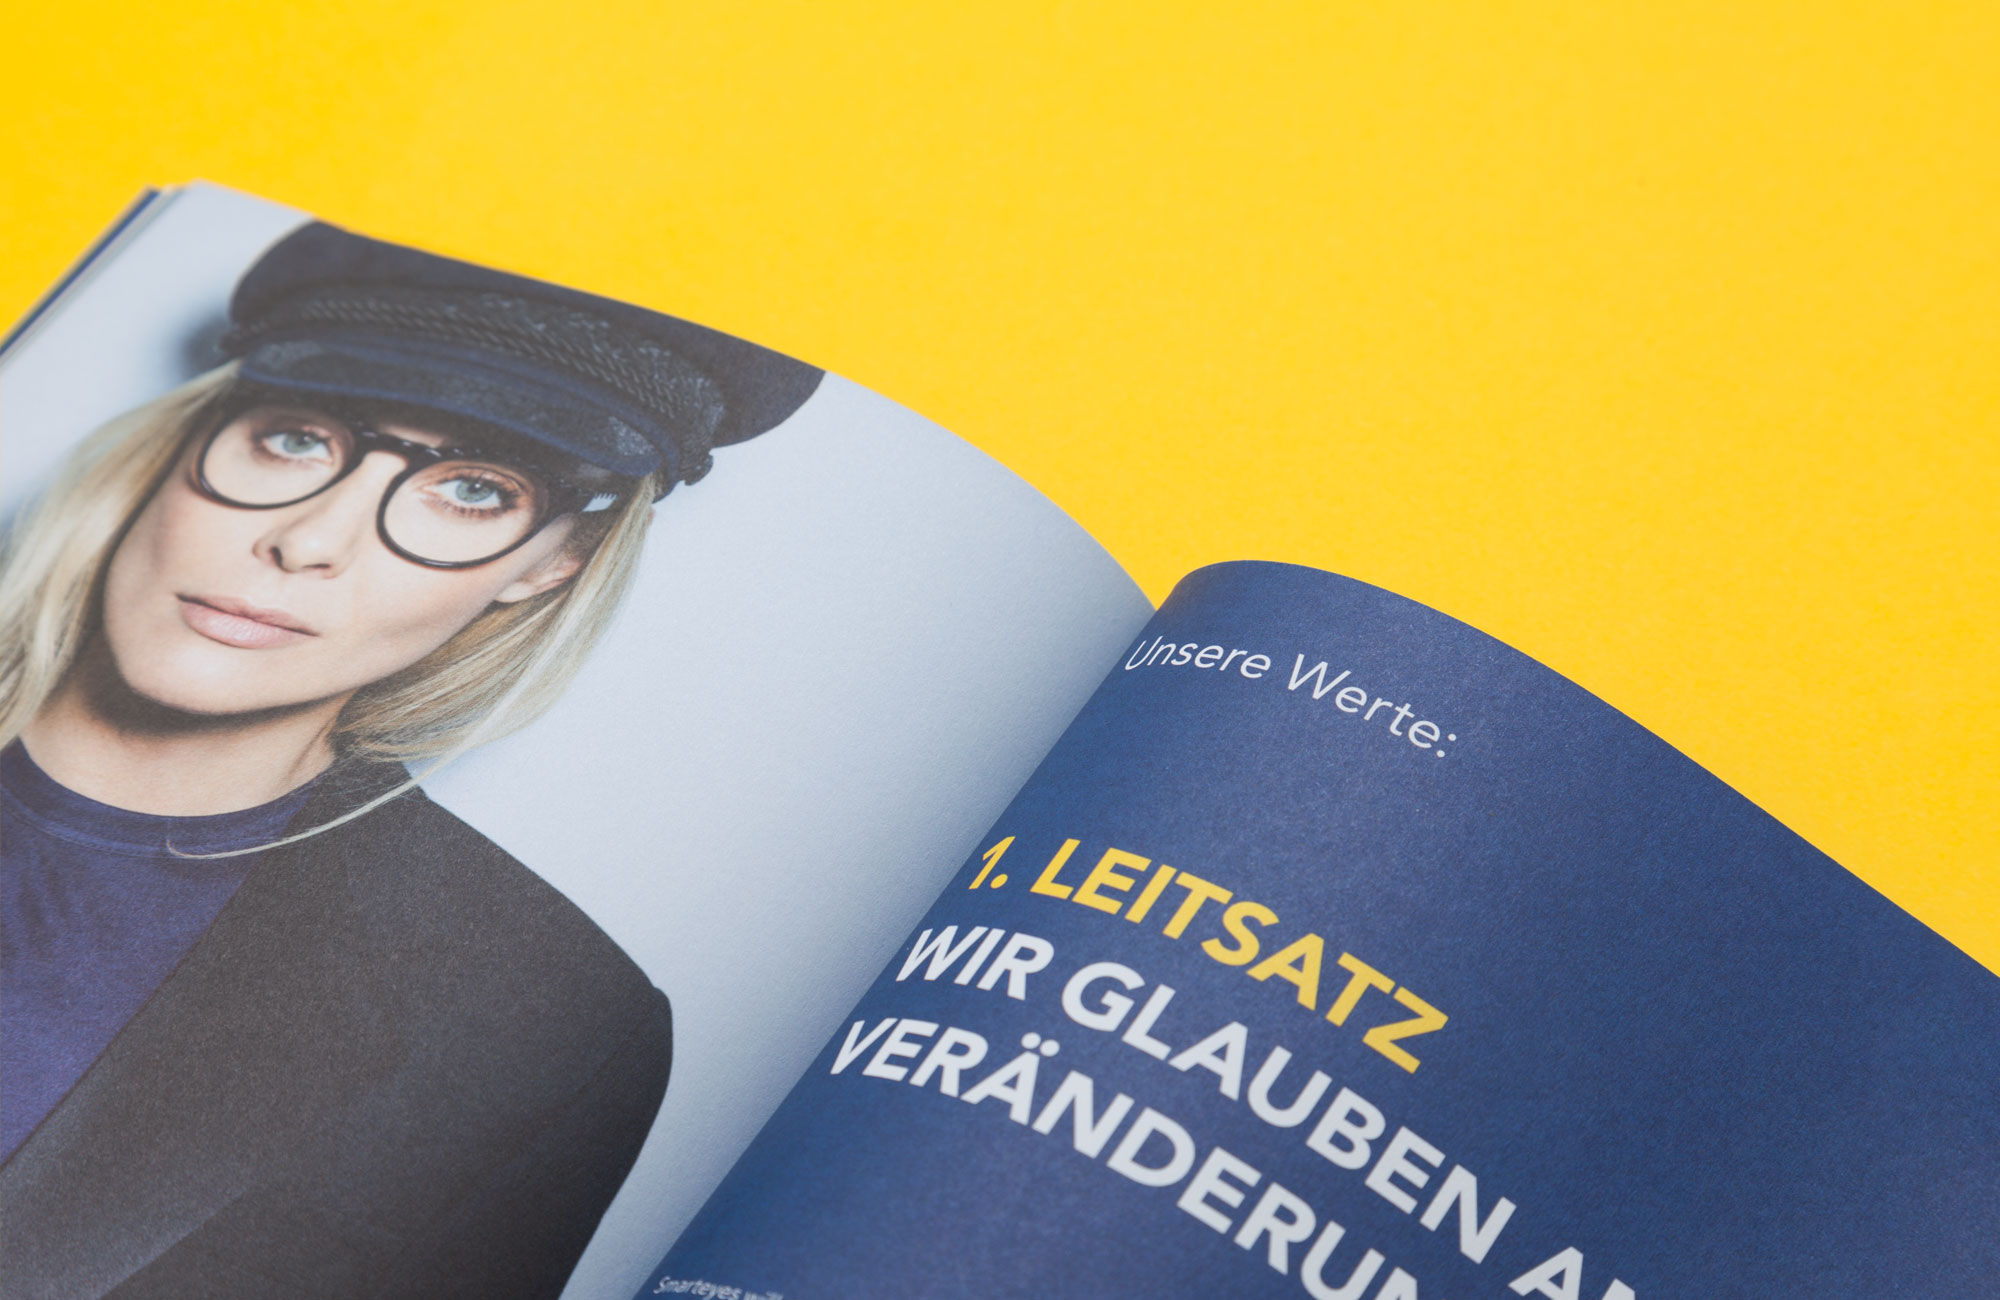 75a Büro für Gestaltung aus Stuttgart hat das neue Corporate Design Brandbook für den schwedischen Brillenhersteller smarteyes entworfen